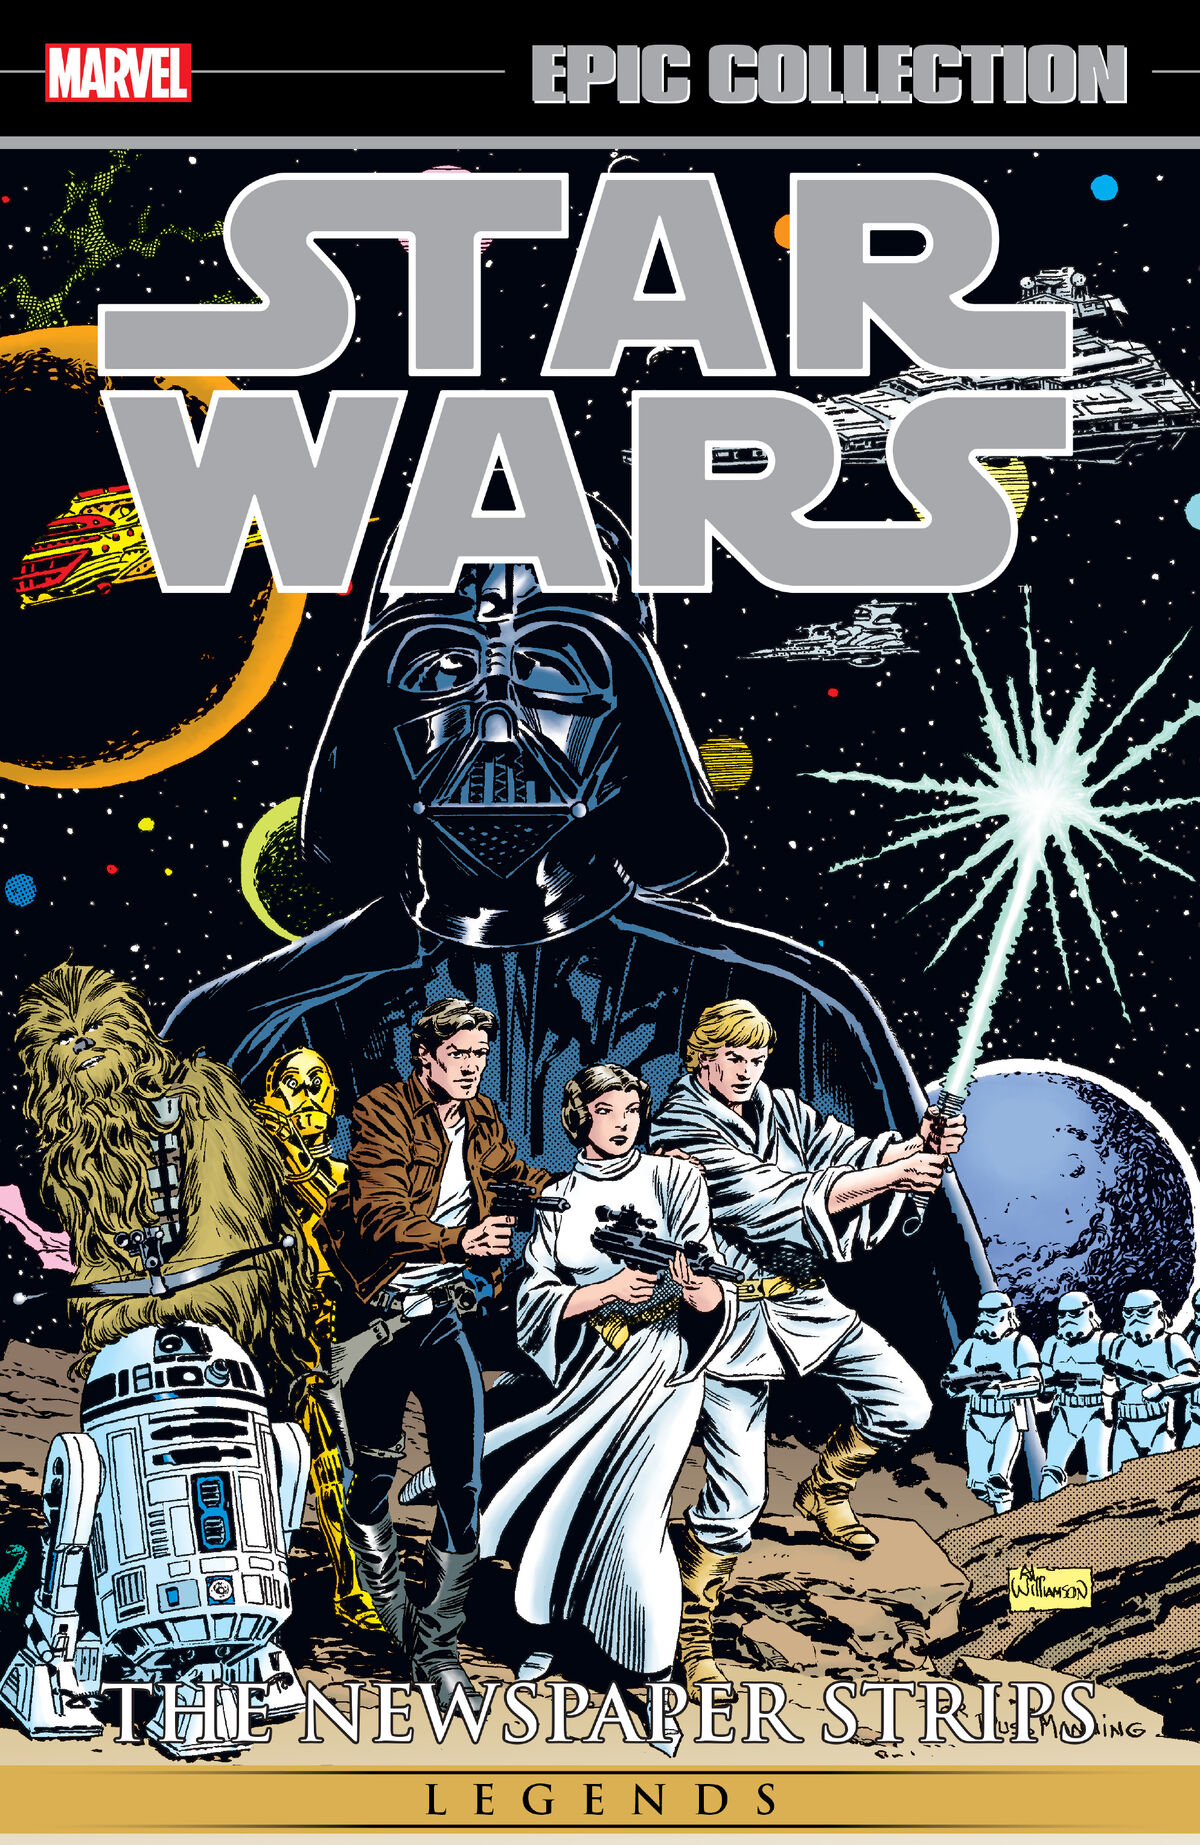 Star wars legends. Комиксы Звездные войны классика 3. Star Wars классический Постер. Star Wars обложка.